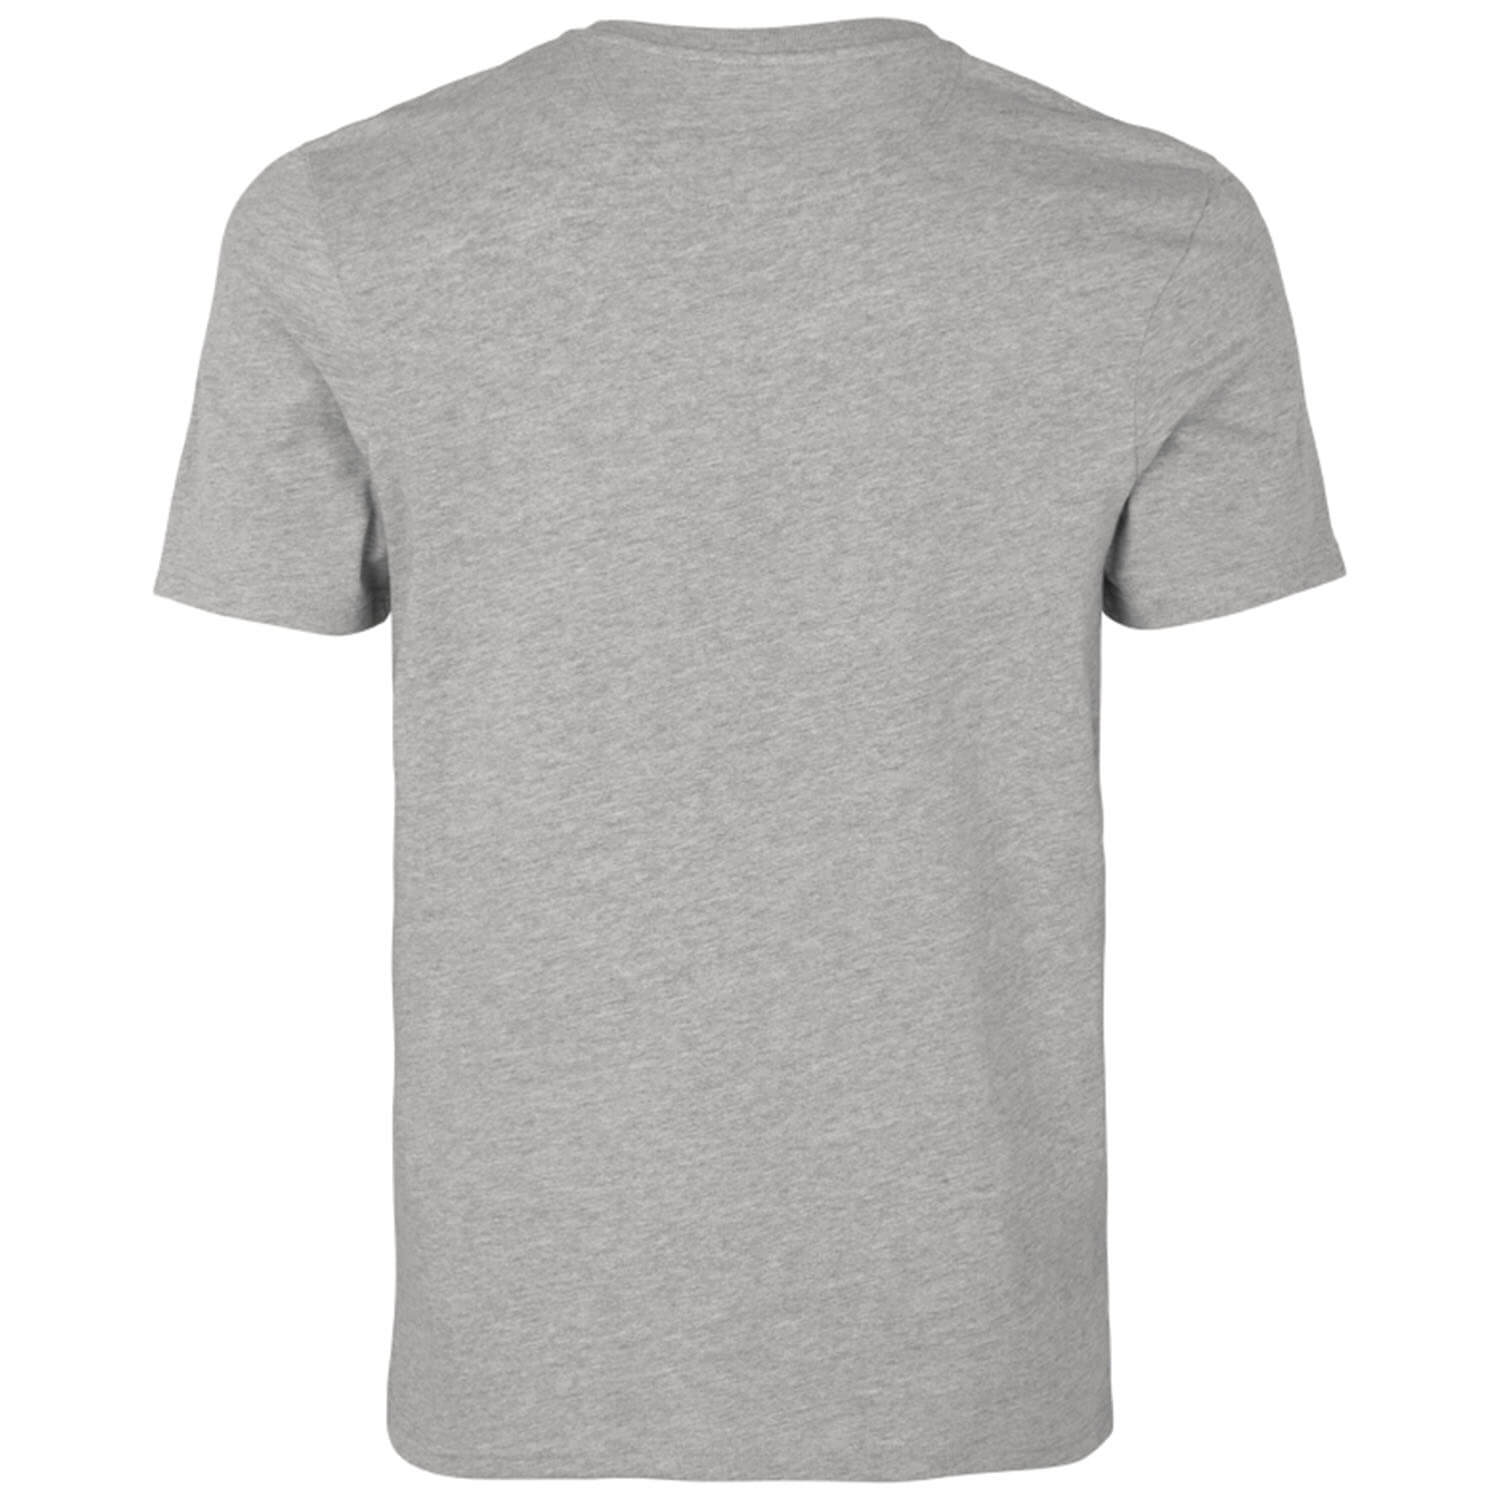  Seeland T-shirt Falcon (Donkergrijs gemêleerd)